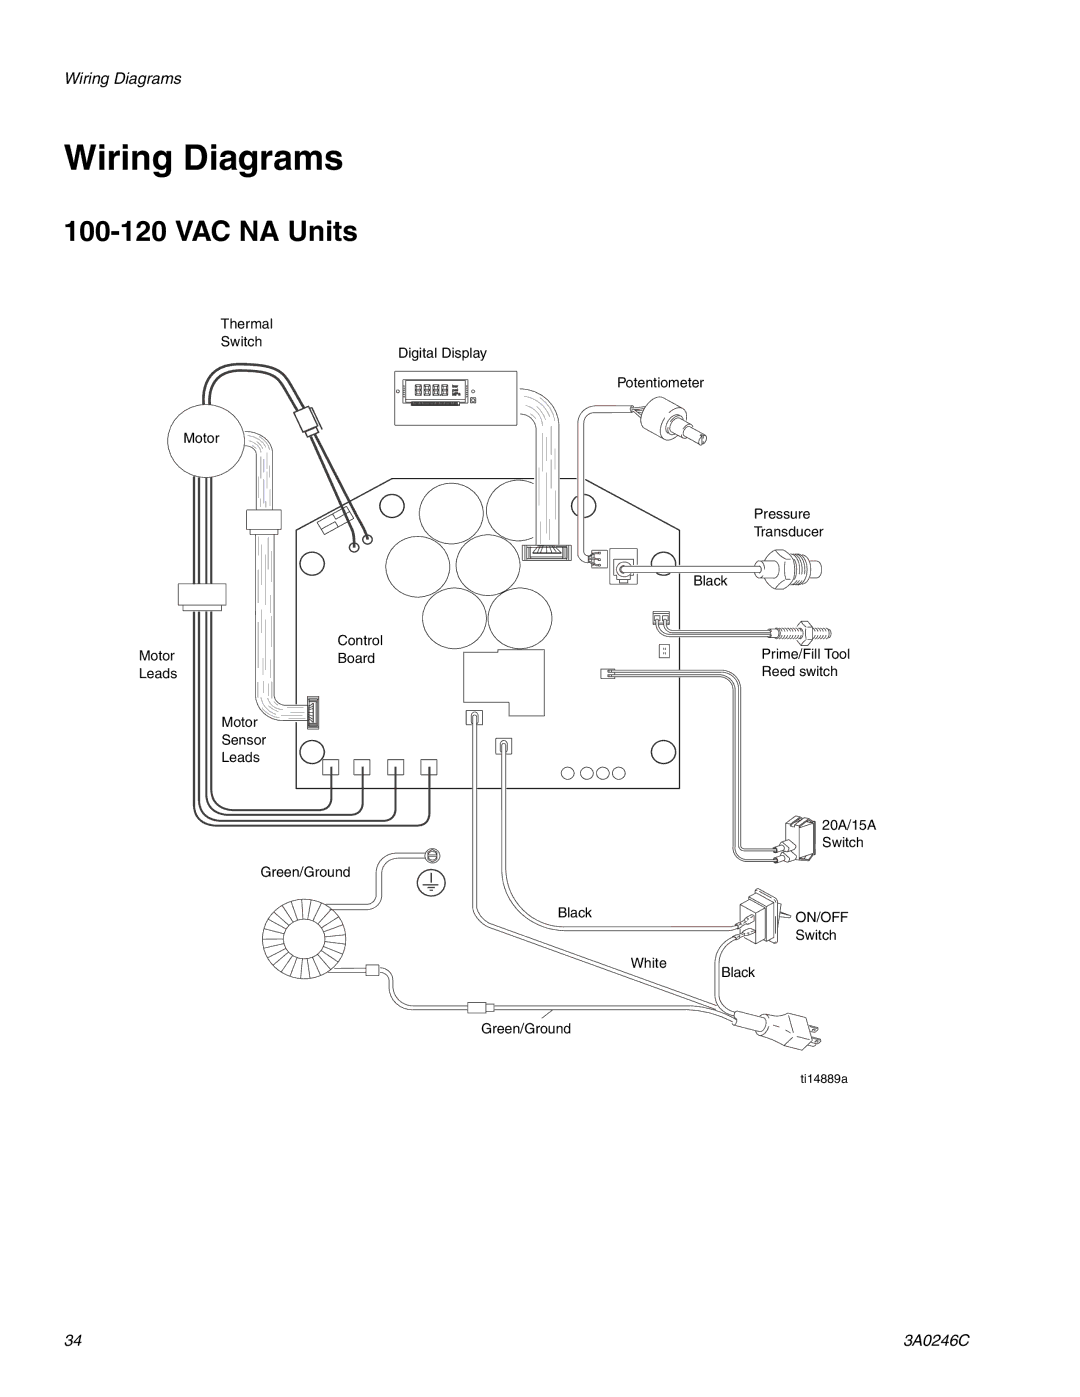 Graco 257100, 262300, 262288, 258907, 258906 manual Wiring Diagrams, VAC NA Units 